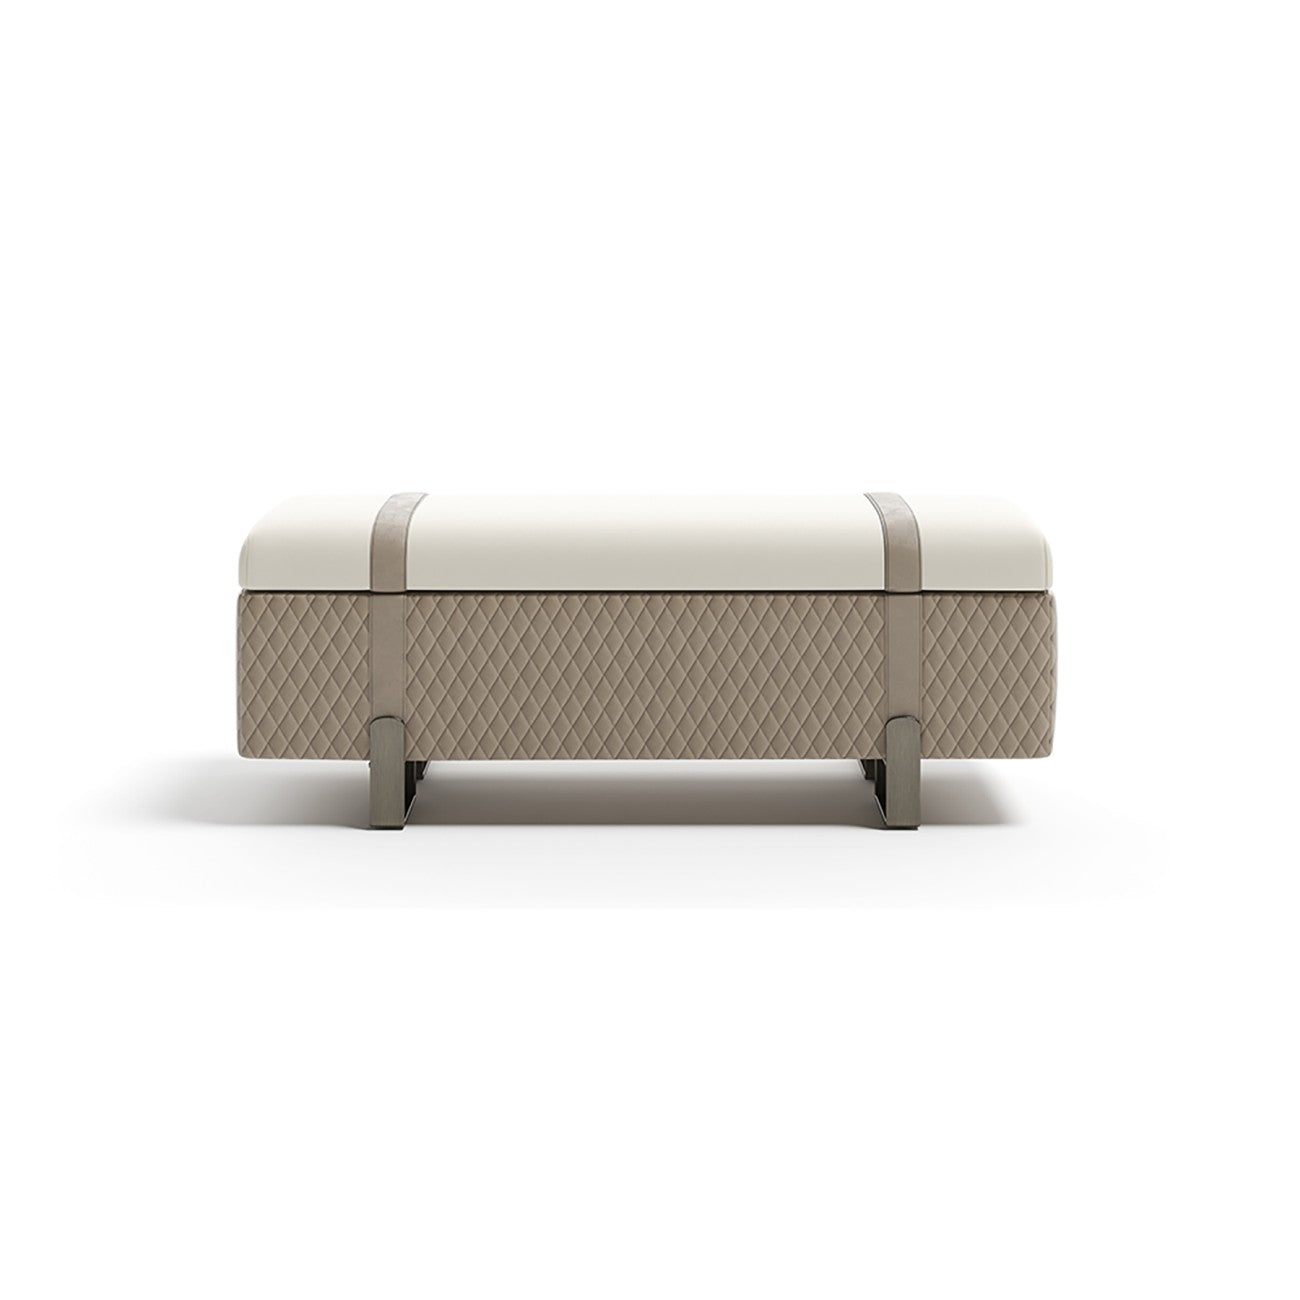 Modern Design Bed Bench With Storage, Beige